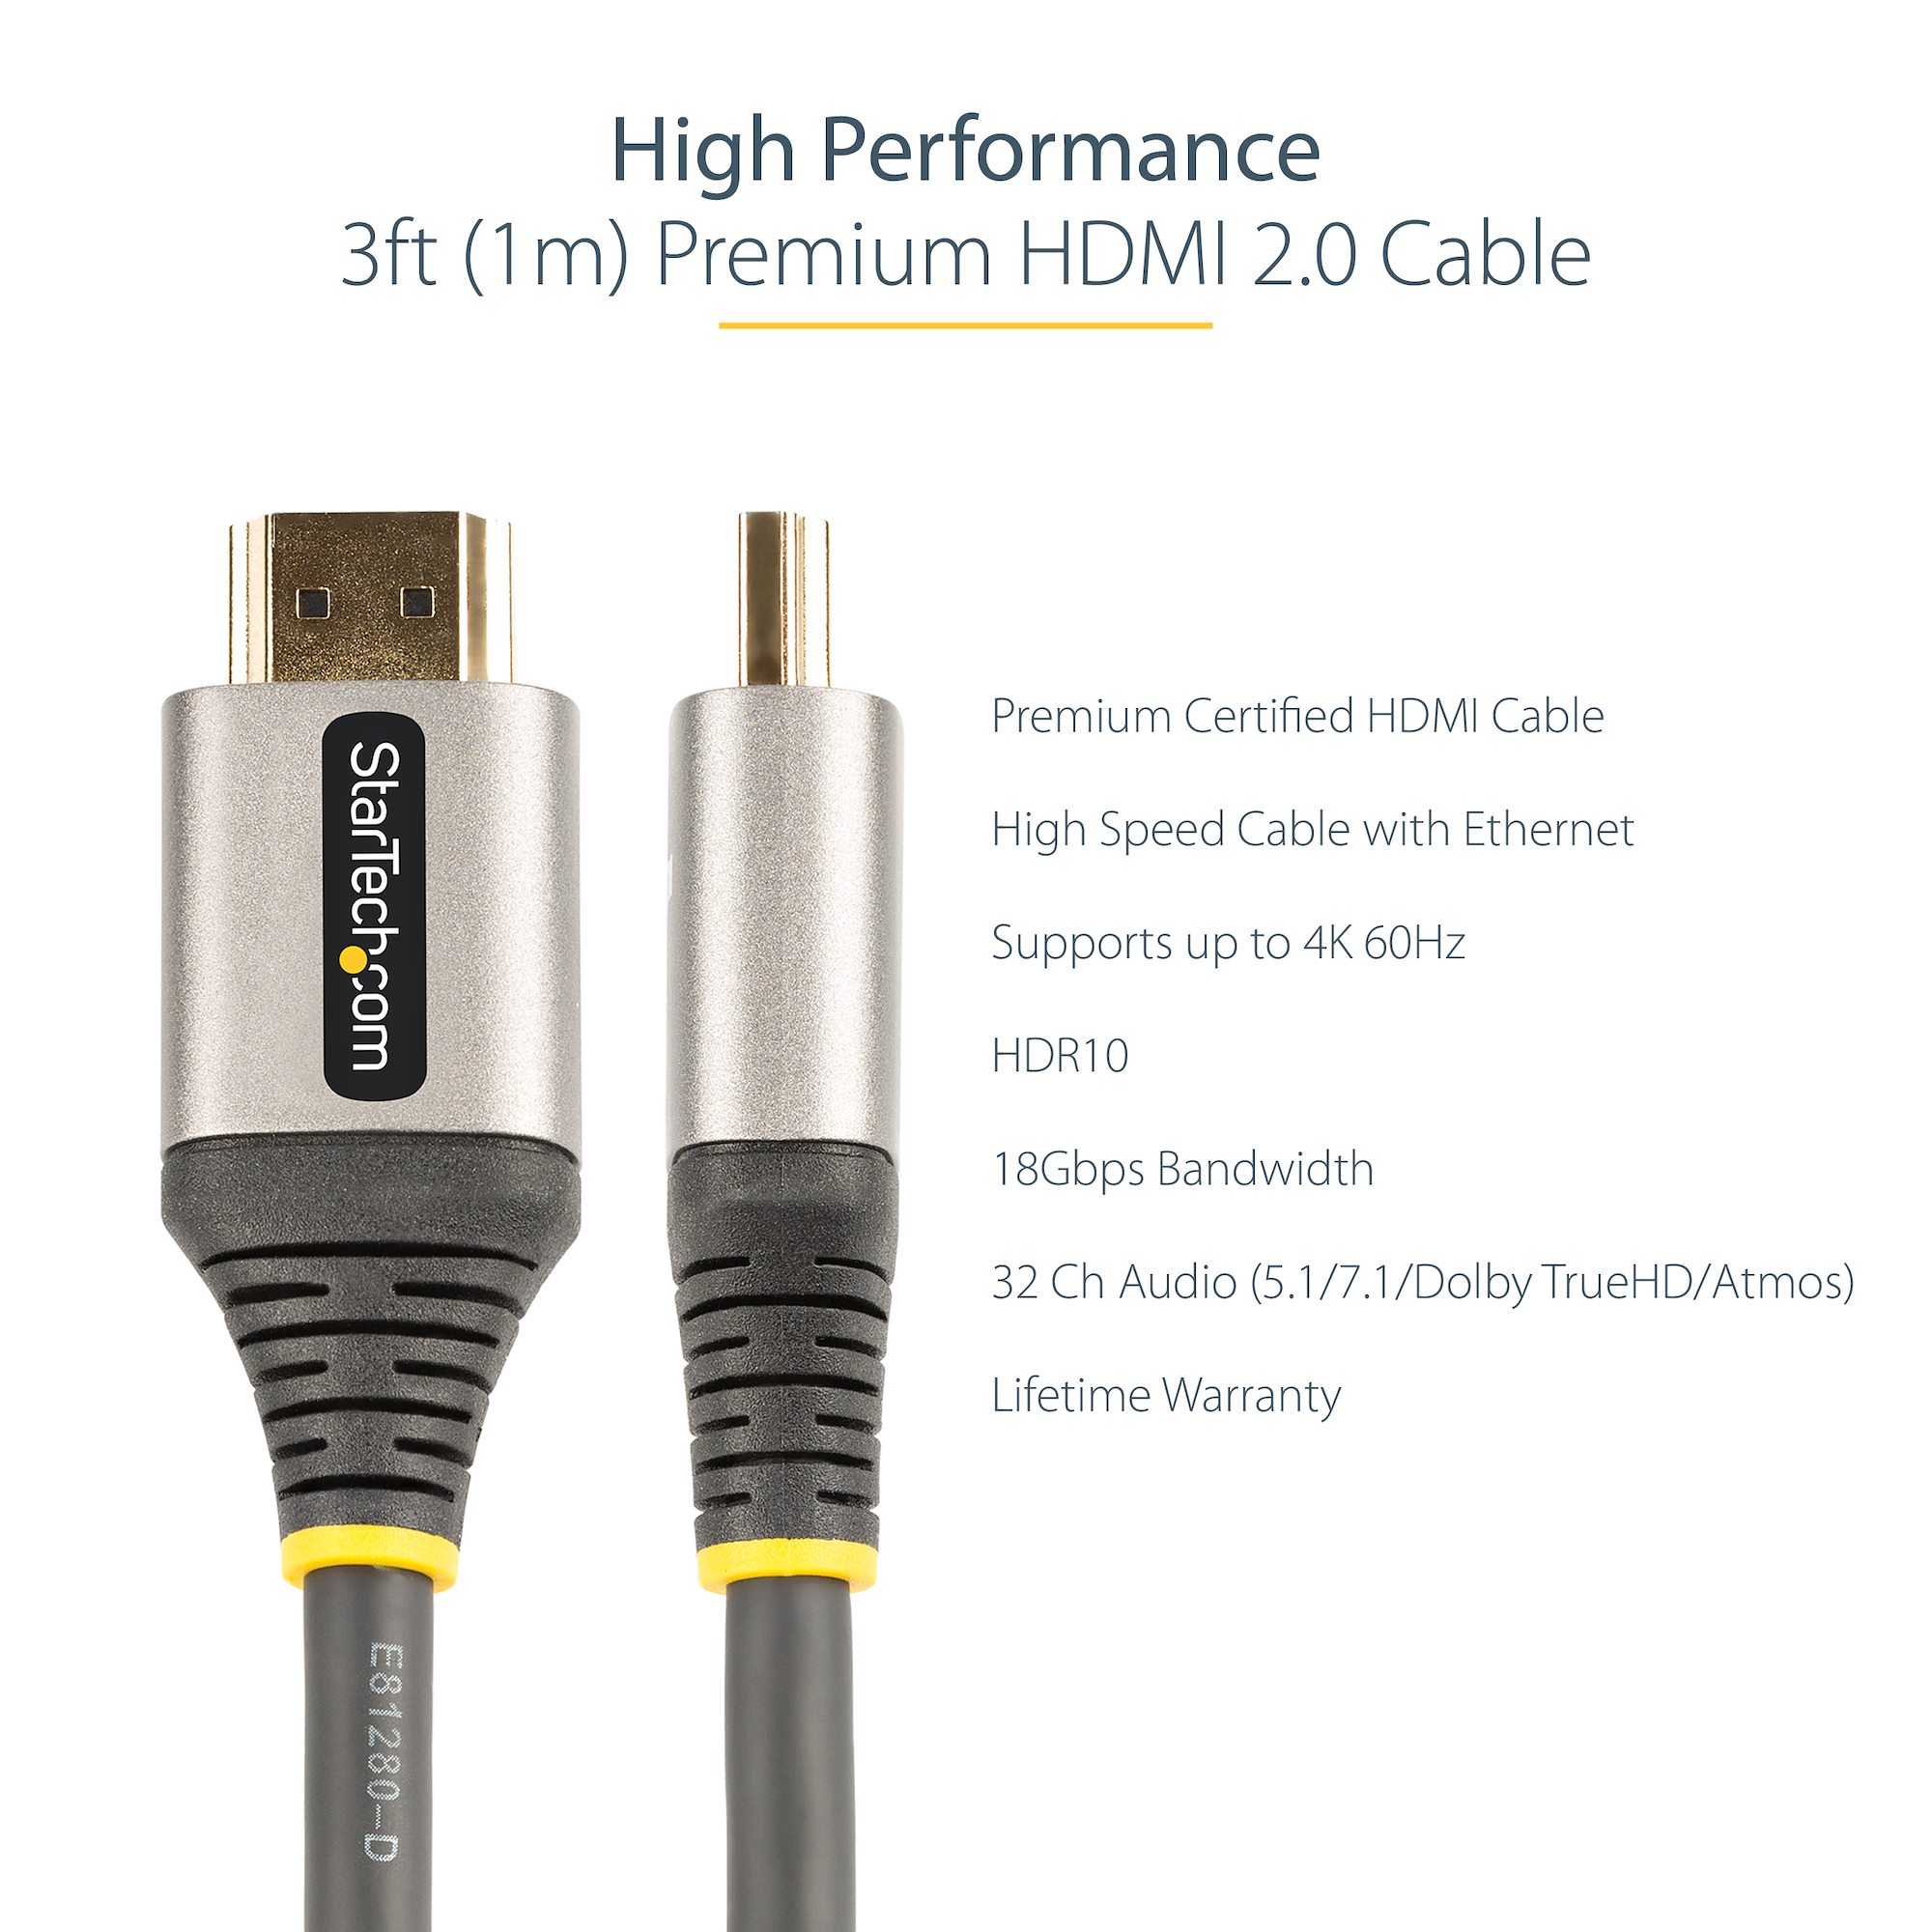 StarTech.com 4K @ 30Hz HDMI 1.4 Male HDMI to Male HDMI Cable, 3m